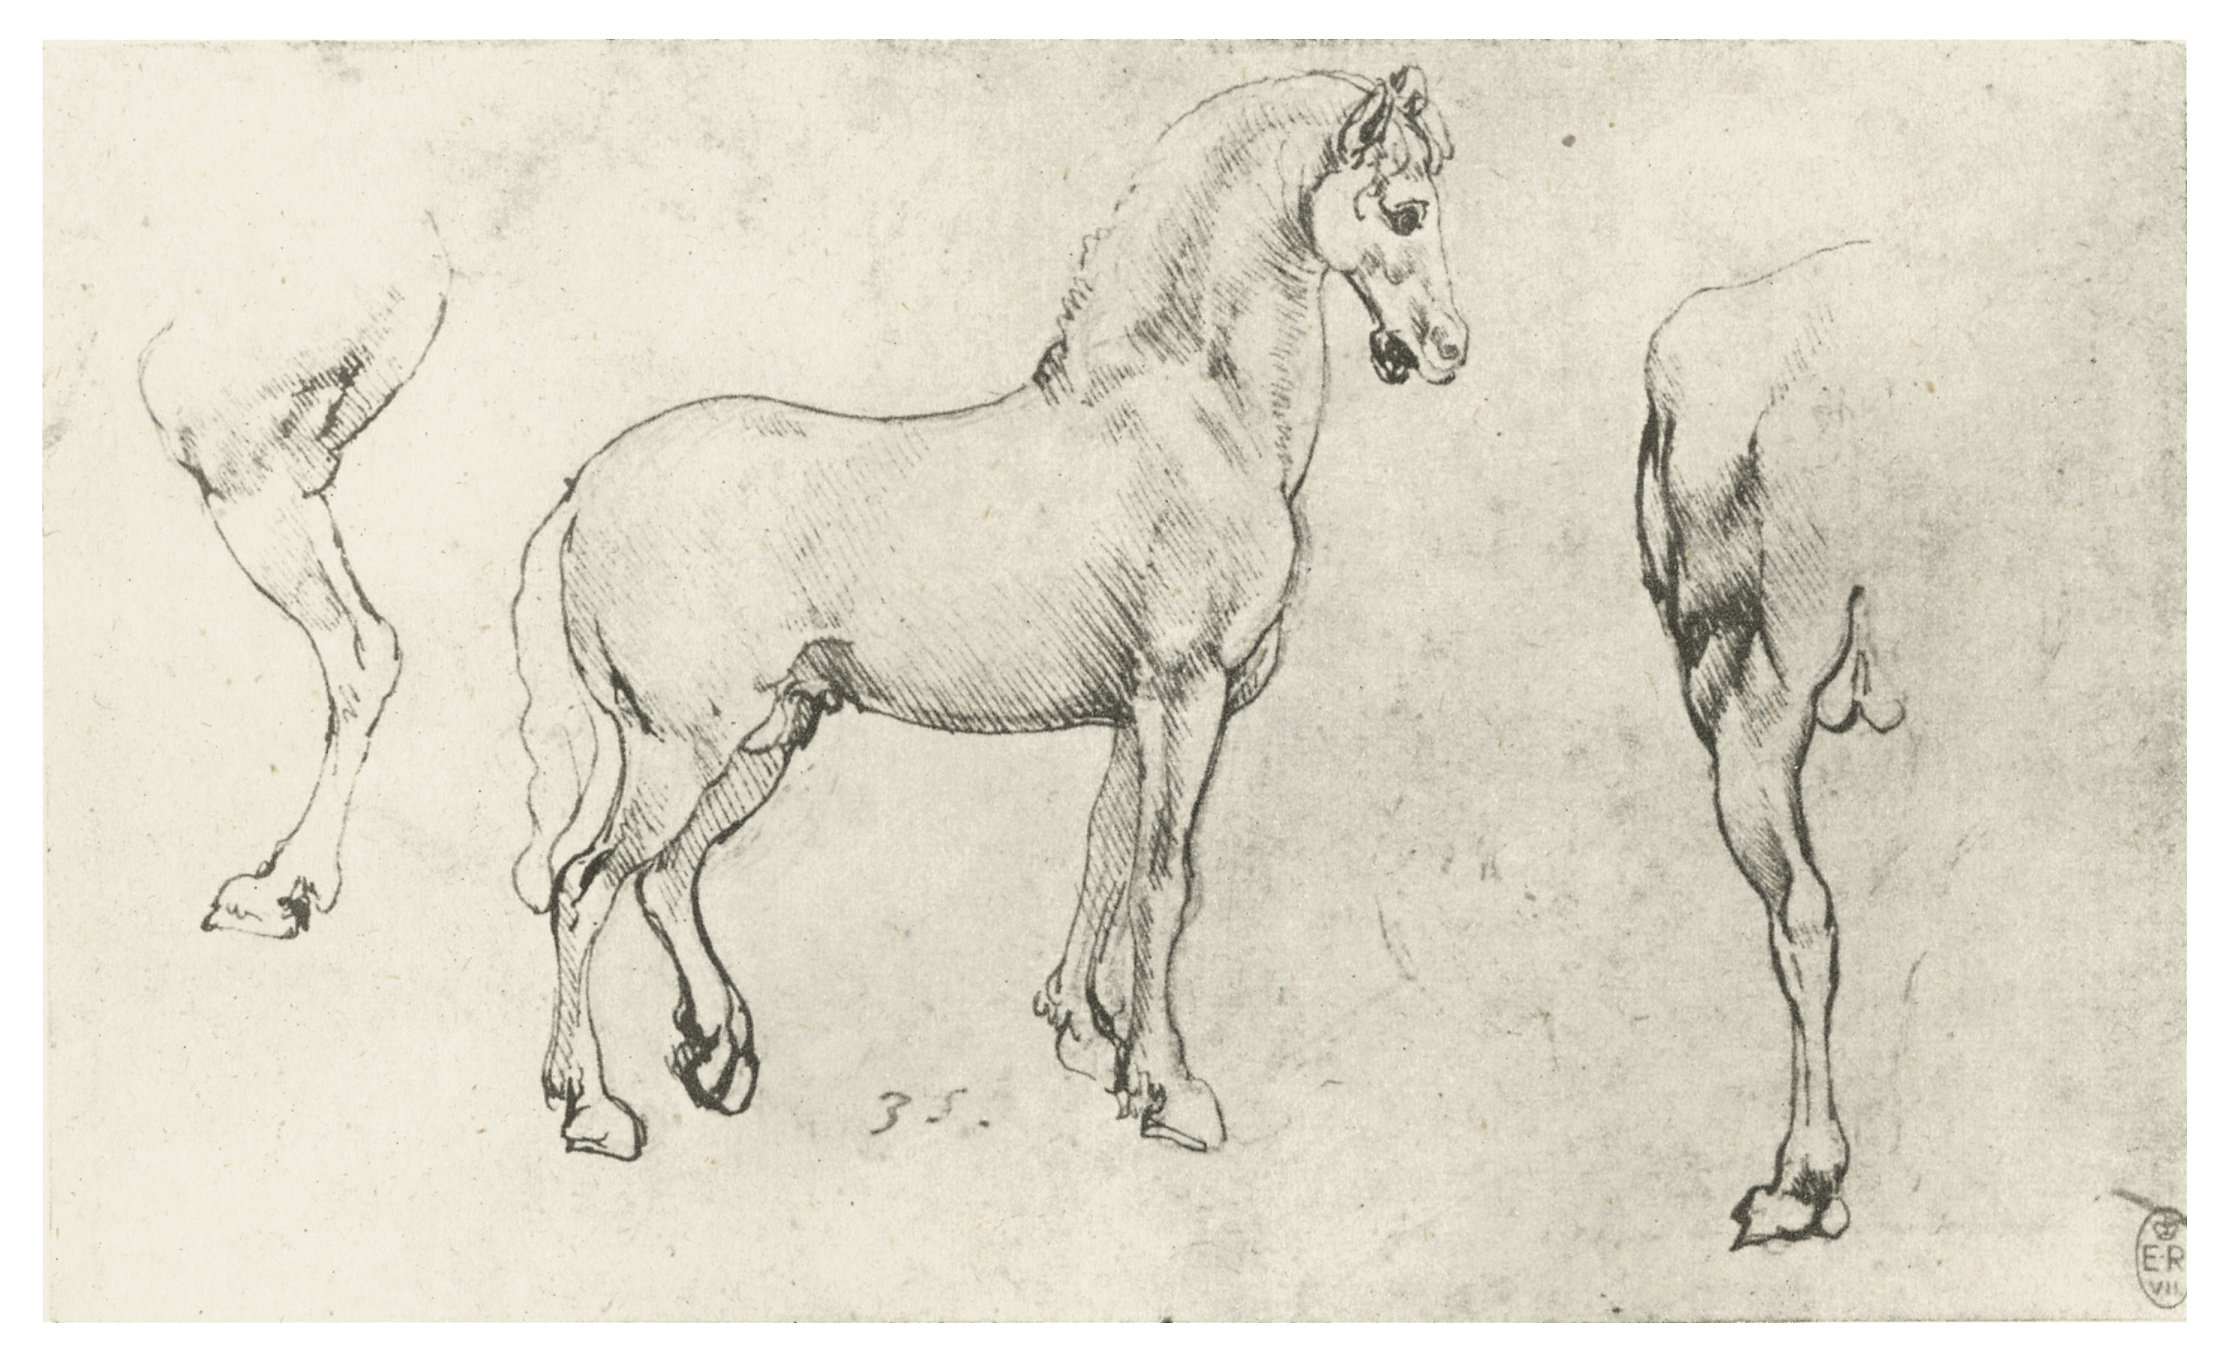 Карандашный набросок 5 букв сканворд. Леонардо да Винчи зарисовки лошадей. Леонардо Давинчи Наброски животных. Леонардо да Винчи анатомия лошади. Анатомические зарисовки Леонардо да Винчи.